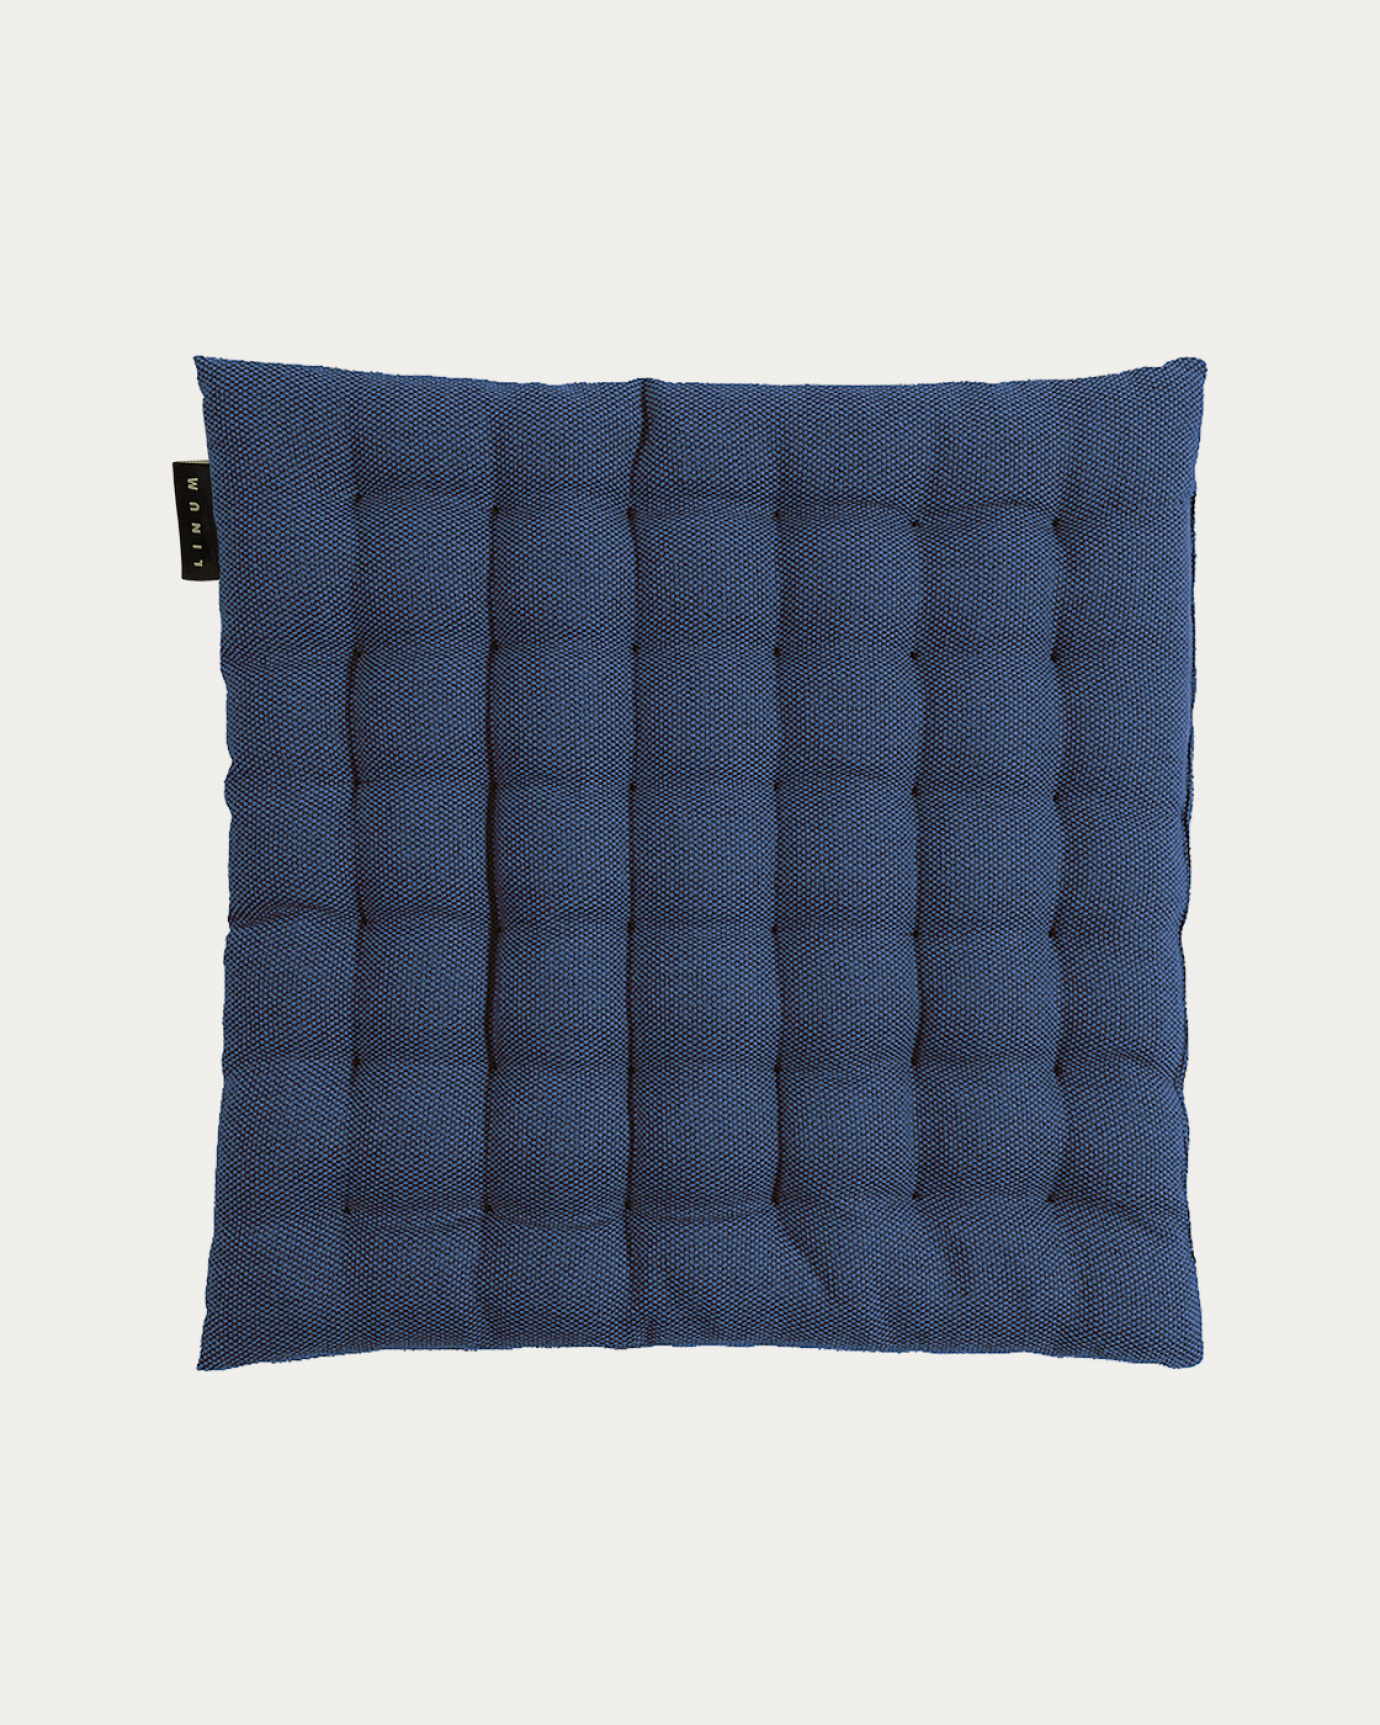 Produktbild indigoblau PEPPER Sitzkissen aus weicher Baumwolle mit Füllung aus recyceltem Polyester von LINUM DESIGN. Größe 40x40 cm.